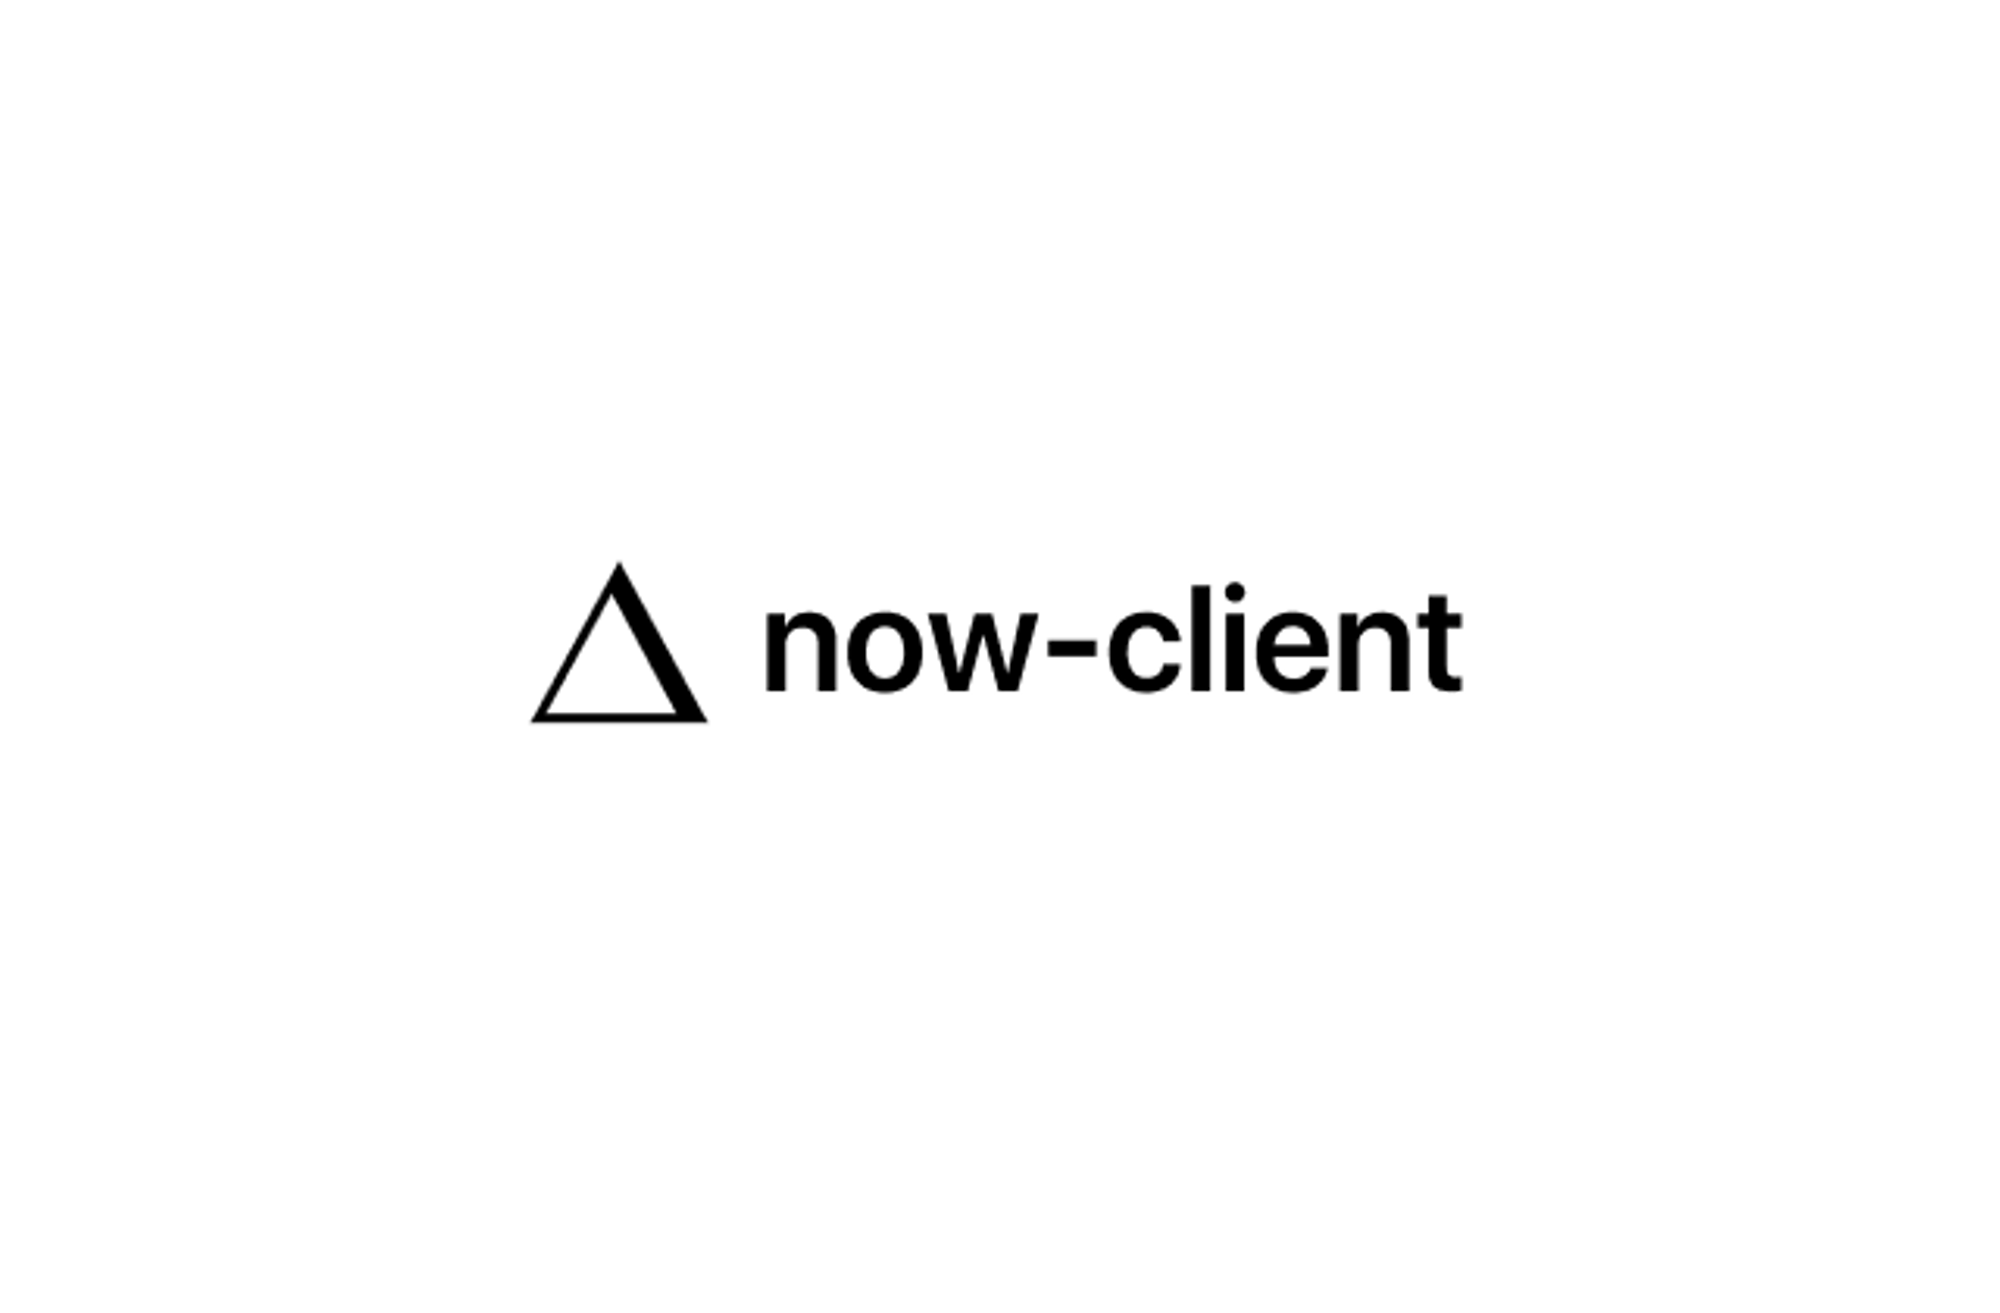 𝚫 now-client